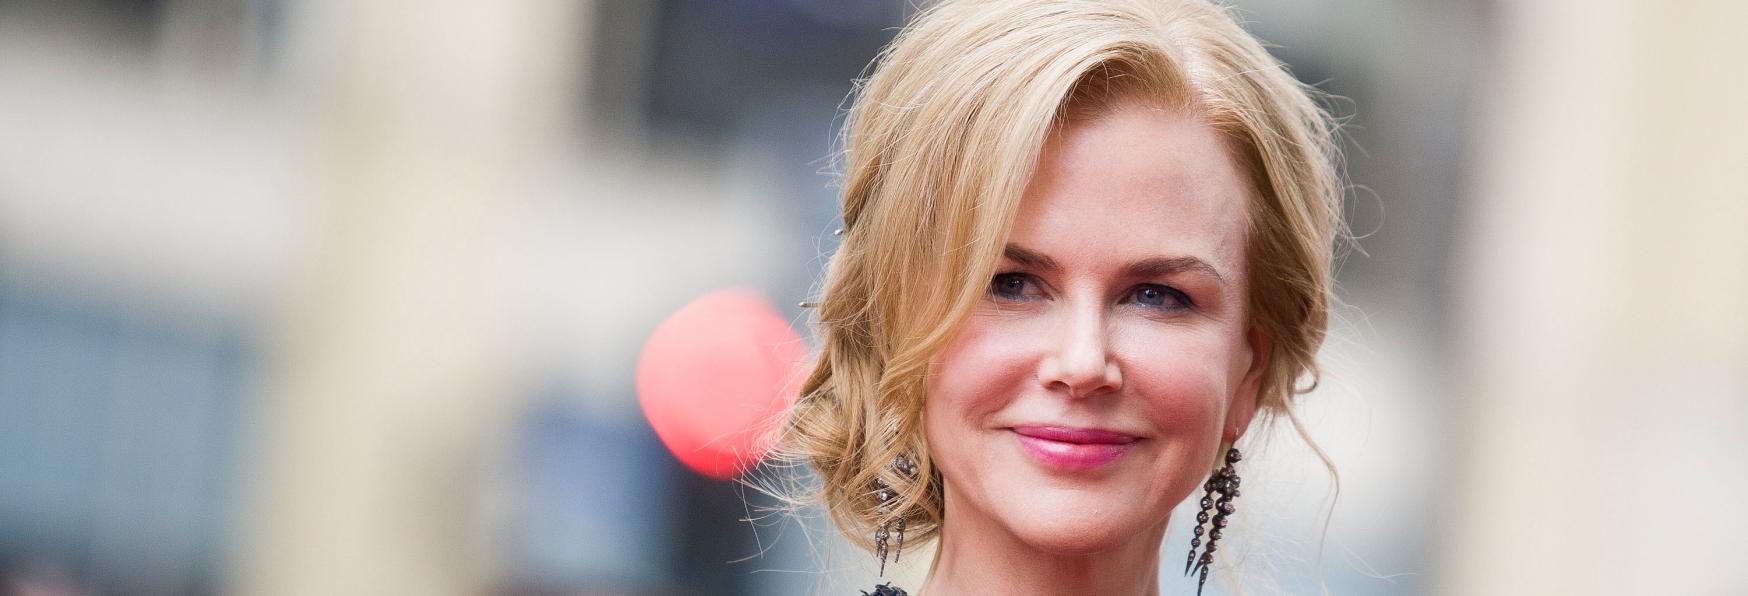 Roar: il primo Sguardo e la Data di Uscita della nuova Serie TV con Nicole Kidman